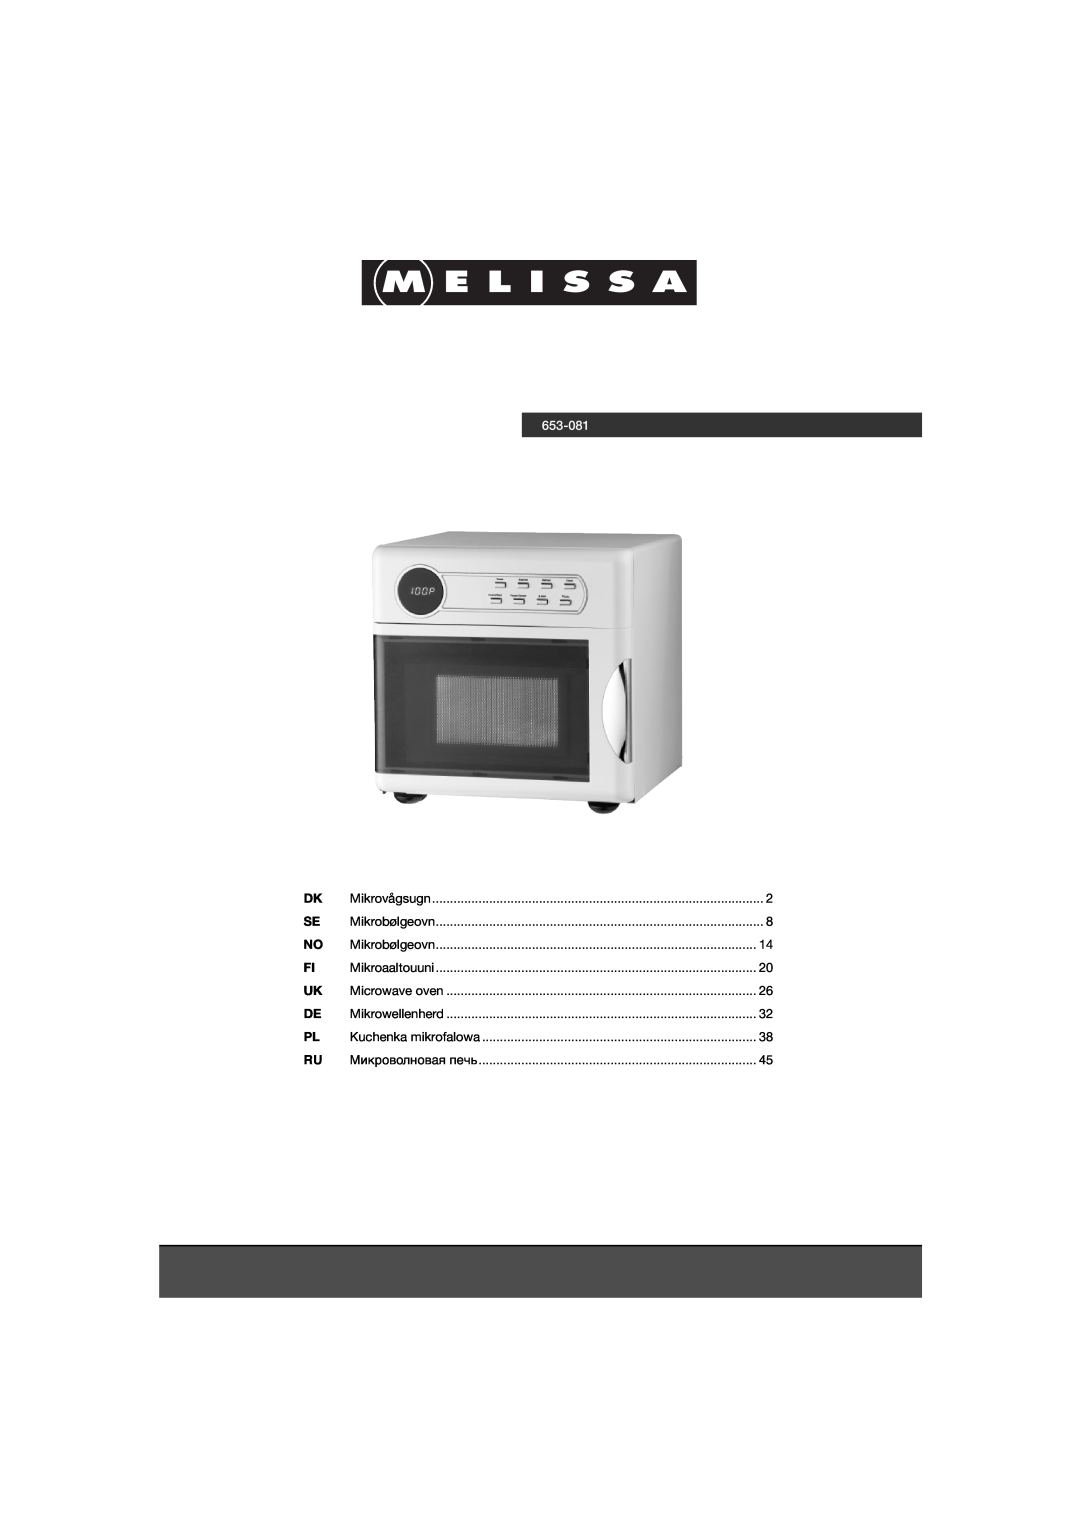 Melissa 653-081 manual Mikrovågsugn, Mikrobølgeovn, Mikroaaltouuni, Microwave oven, Mikrowellenherd, Kuchenka mikrofalowa 